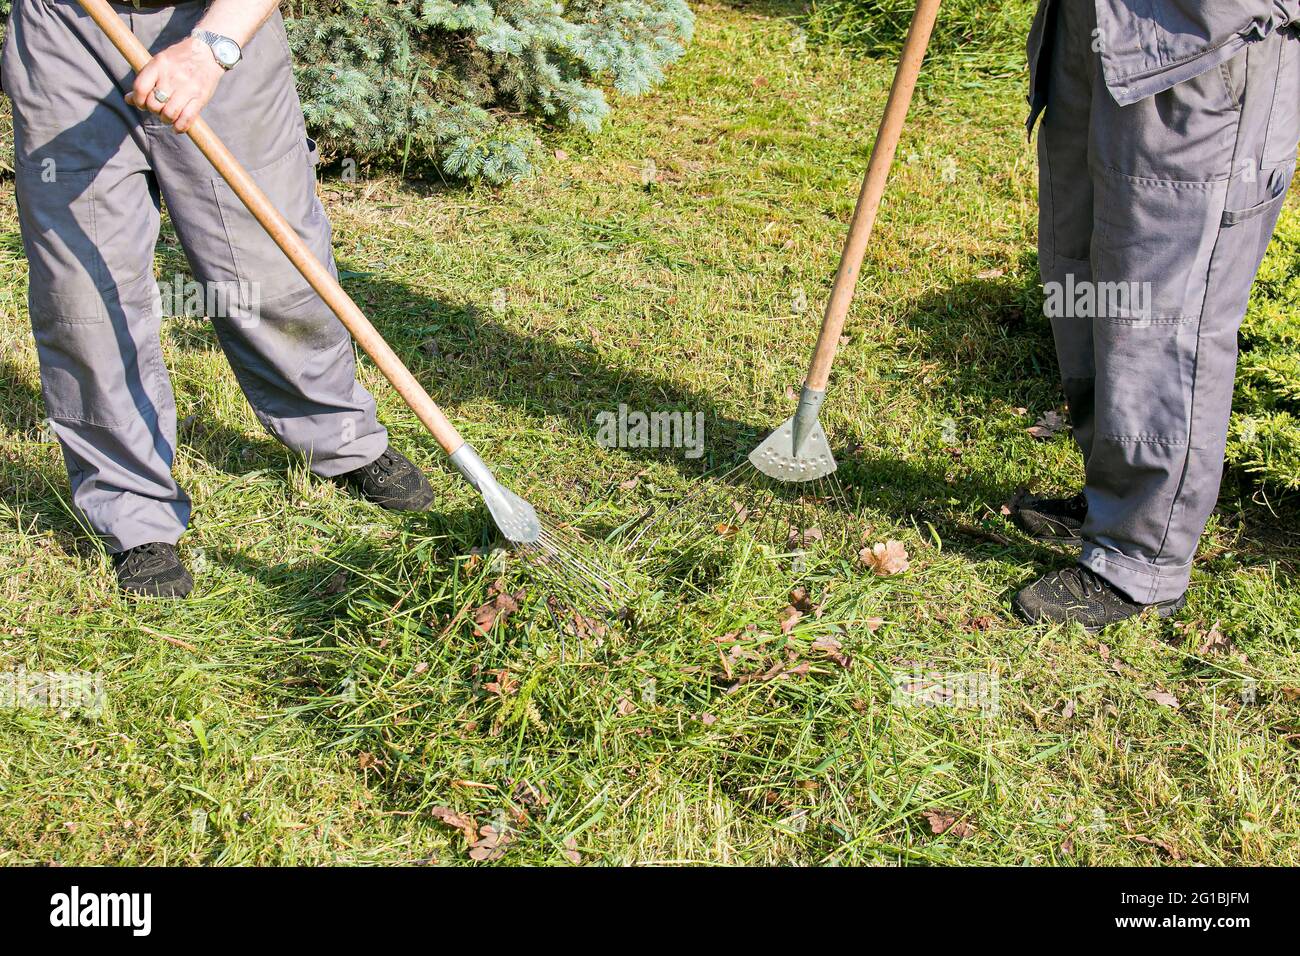 Mitarbeiter der Stadtwerke sind mit der Reinigung von trockenen Blättern auf dem Rasen des Stadtparks beschäftigt. Rechen arbeiten. Stockfoto